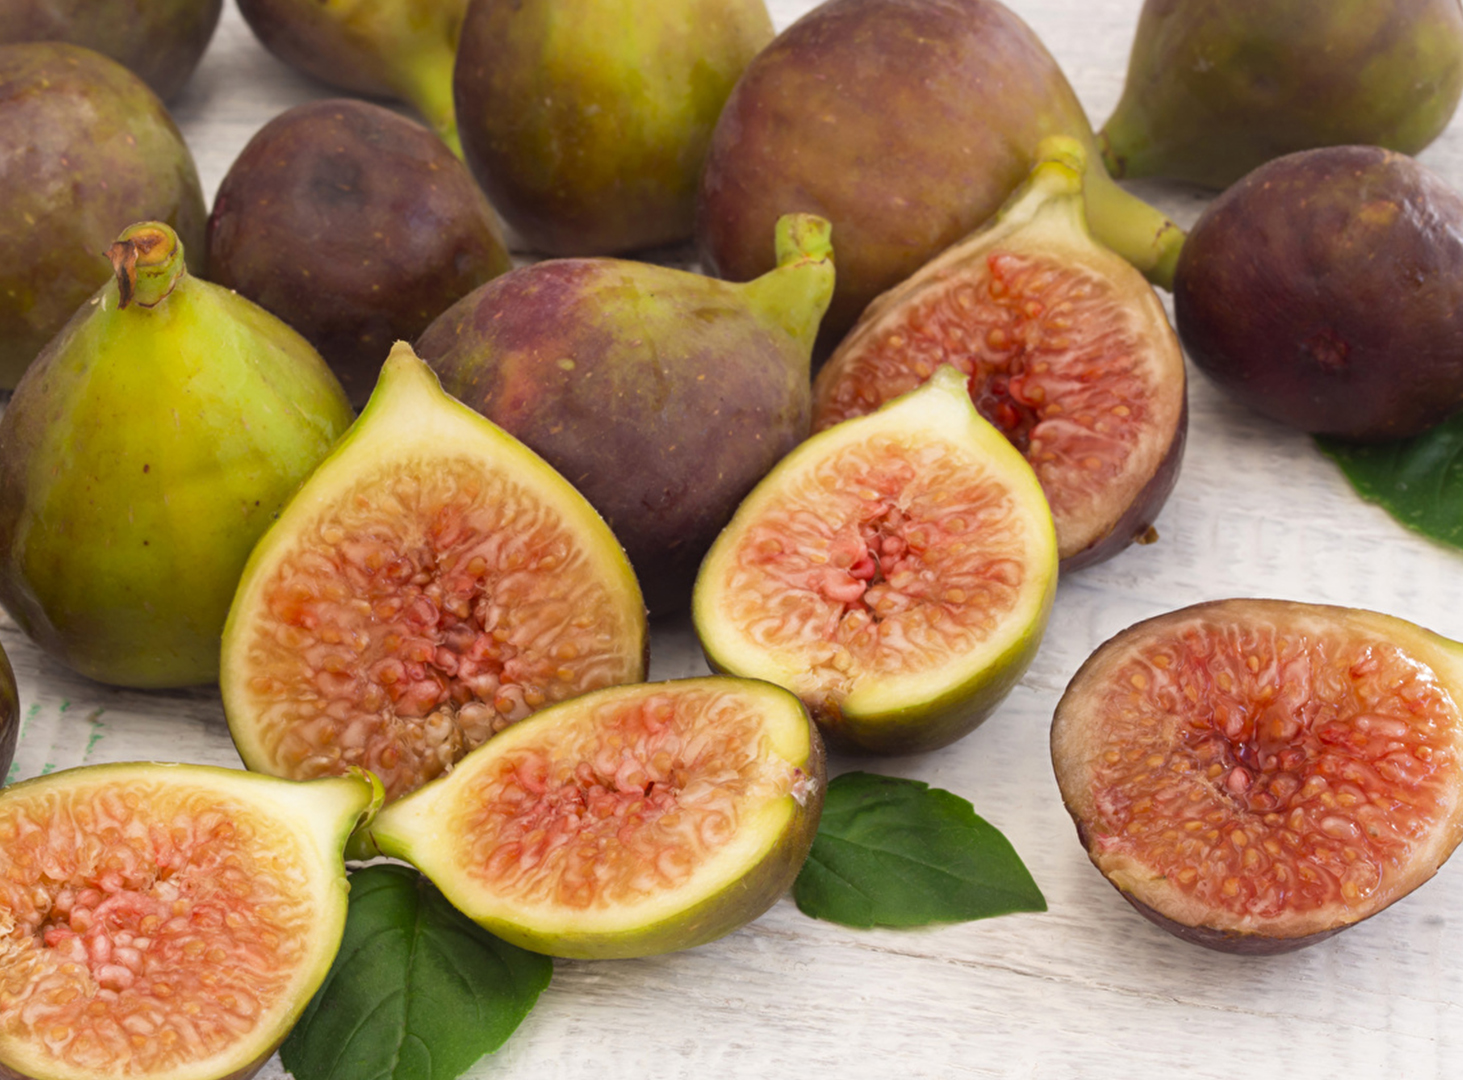 Figs - a sweet temptation.